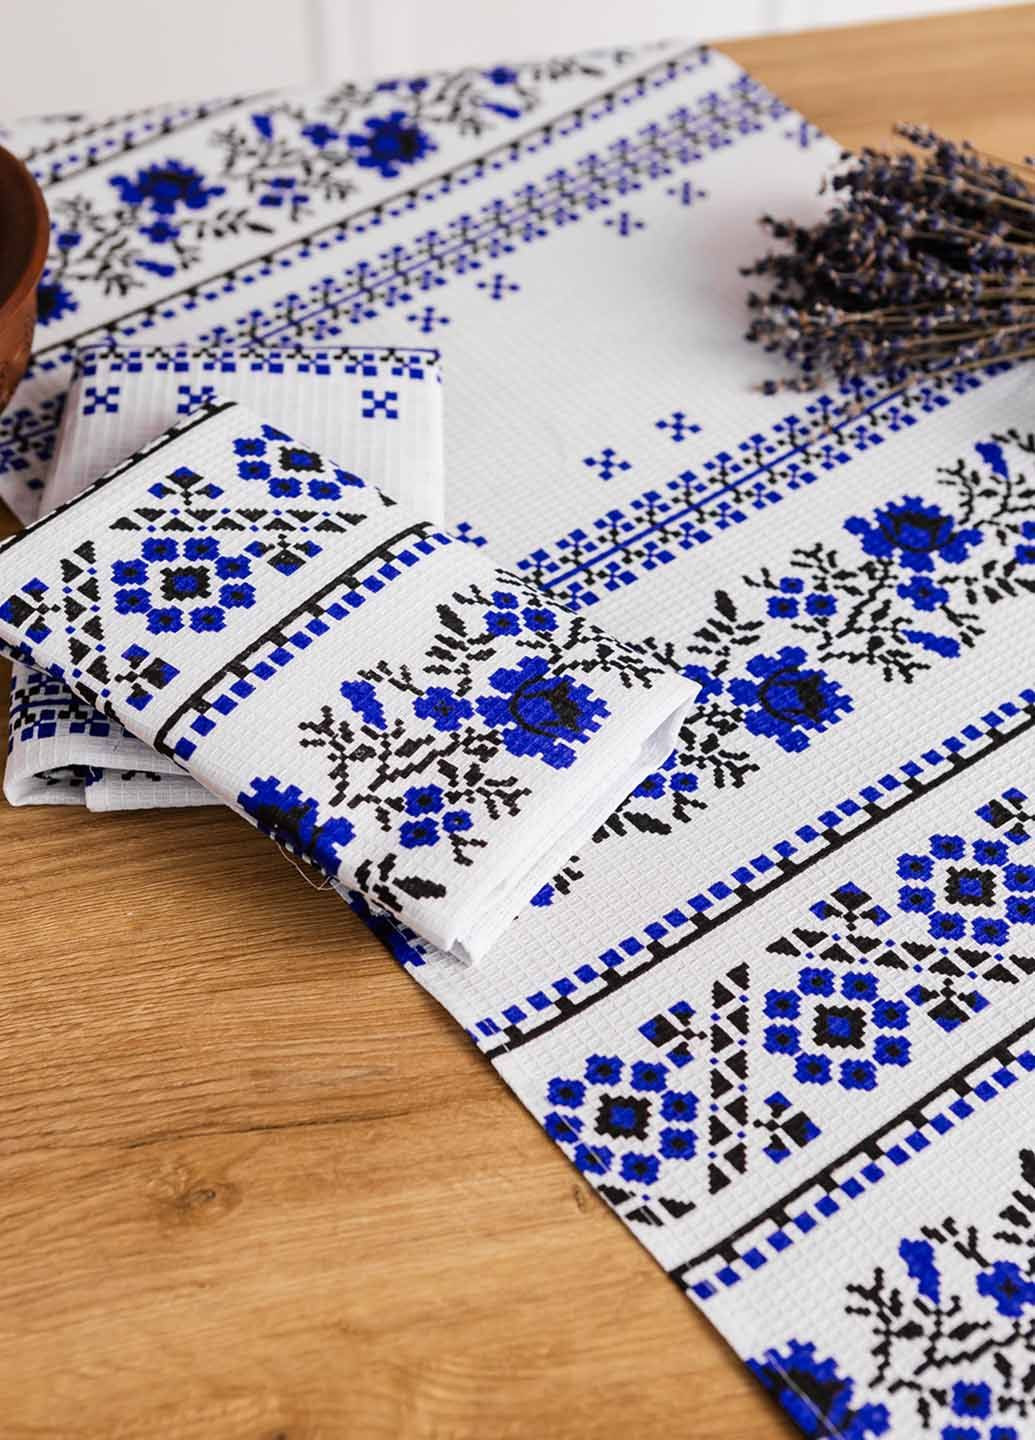 Homedec полотенца вафельные "орнамент синий" 75х35 см (комплект 4шт) орнамент белый производство - Турция